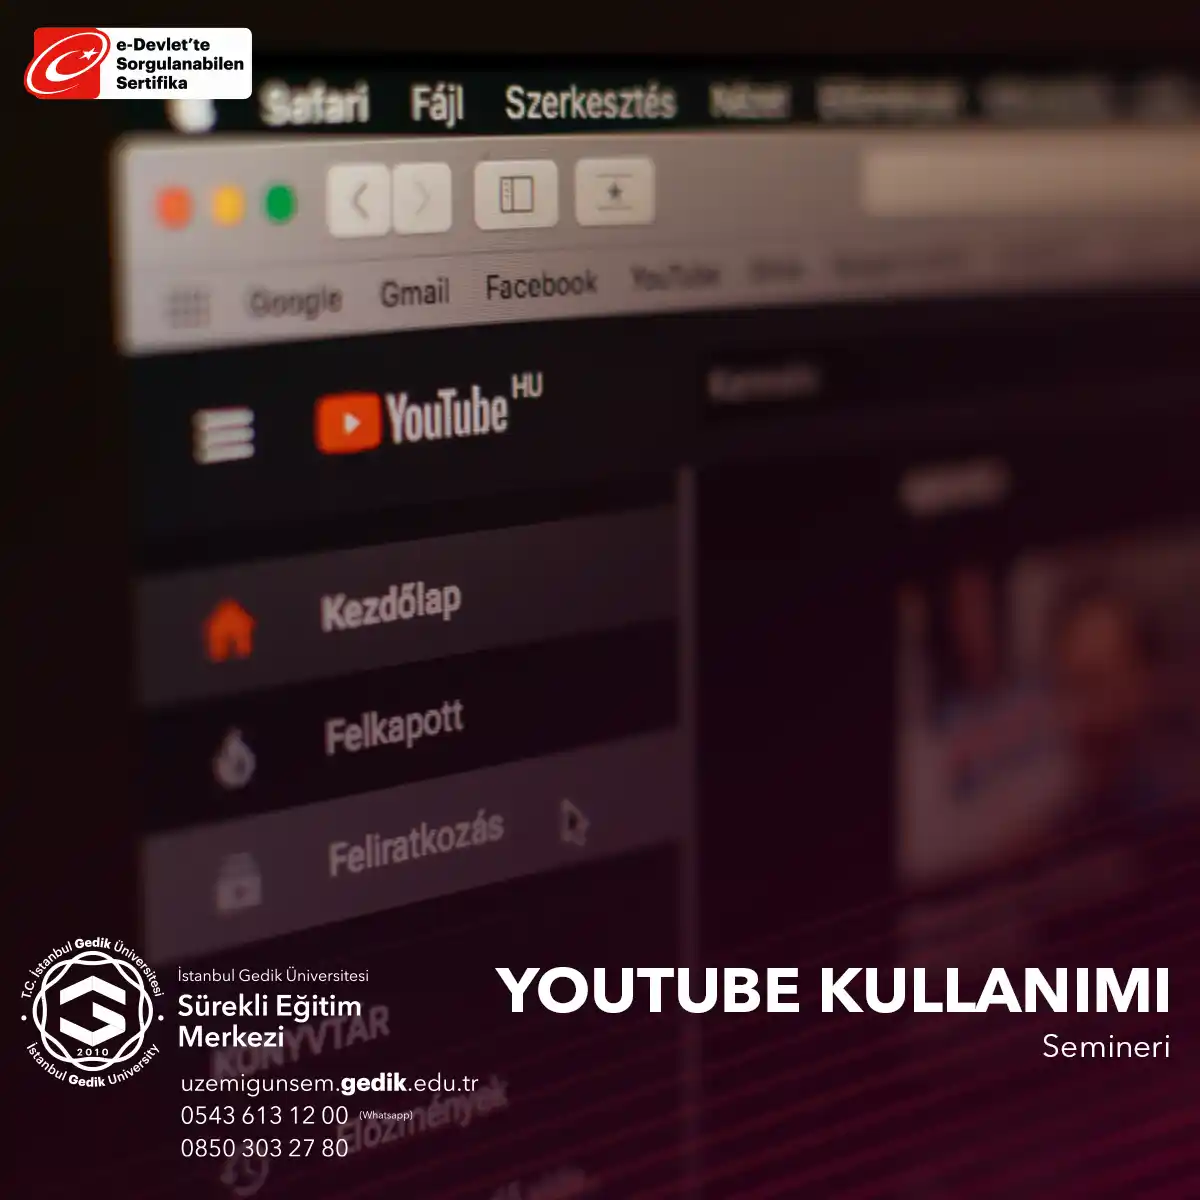 Seminer, Youtube platformunu etkili bir şekilde kullanarak içerik oluşturma, yayınlama ve izleyici kitlesini büyütme becerilerini öğrenme fırsatı sunar.